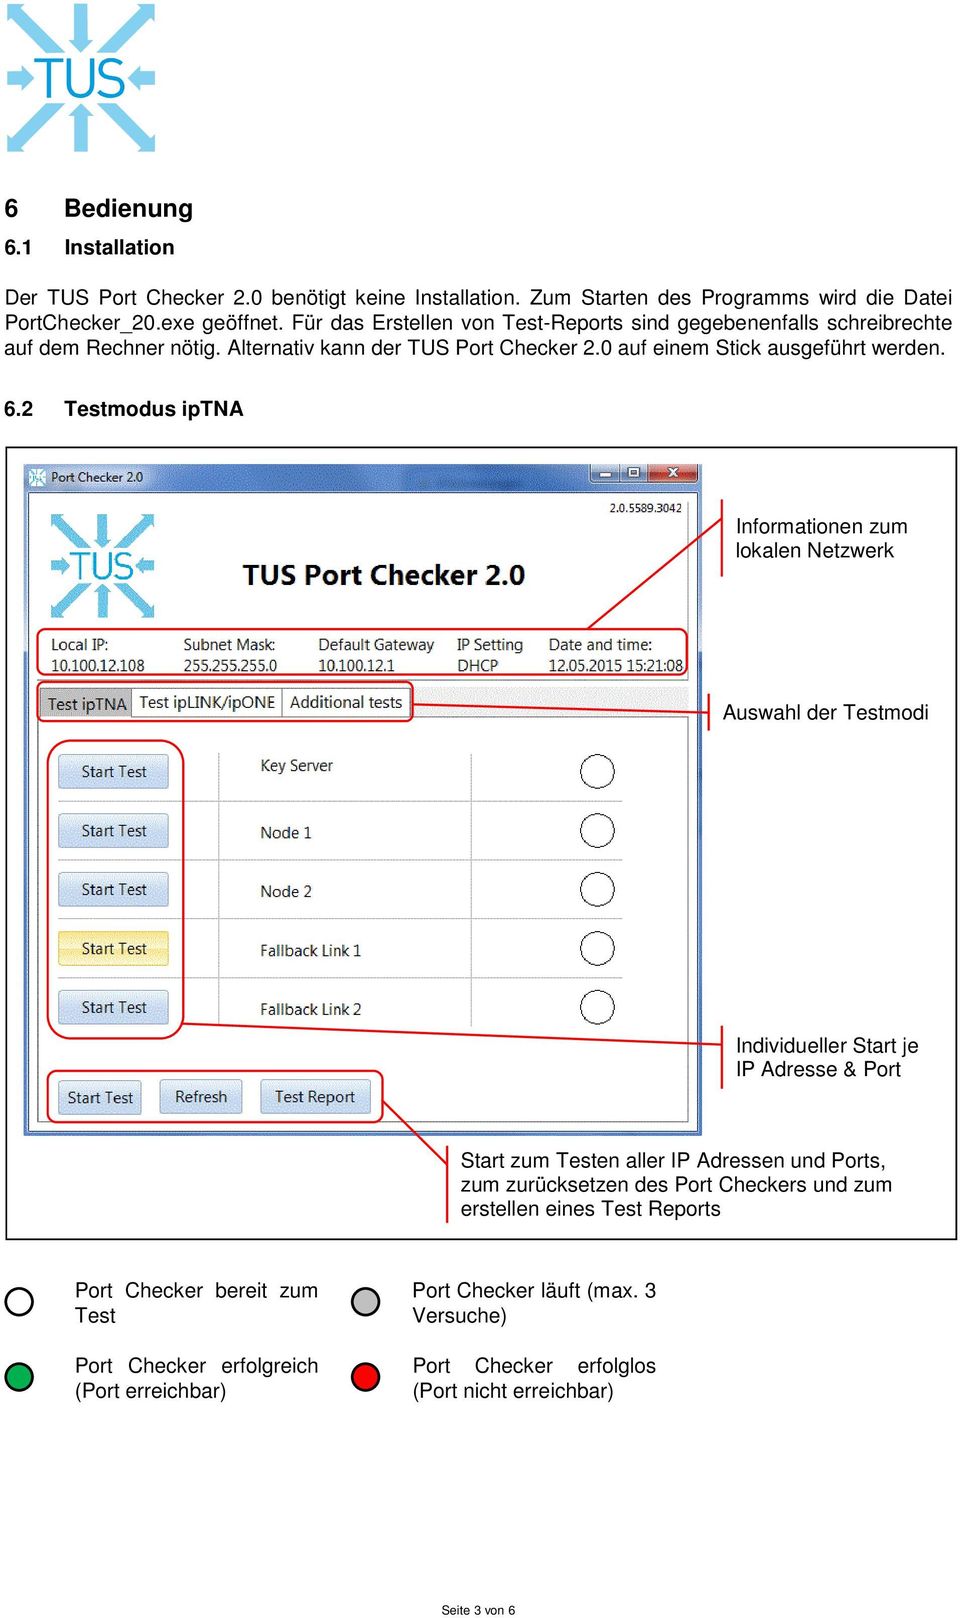 2 Testmodus iptna Informationen zum lokalen Netzwerk Auswahl der Testmodi Individueller Start je IP Adresse & Port Start zum Testen aller IP Adressen und Ports, zum zurücksetzen des